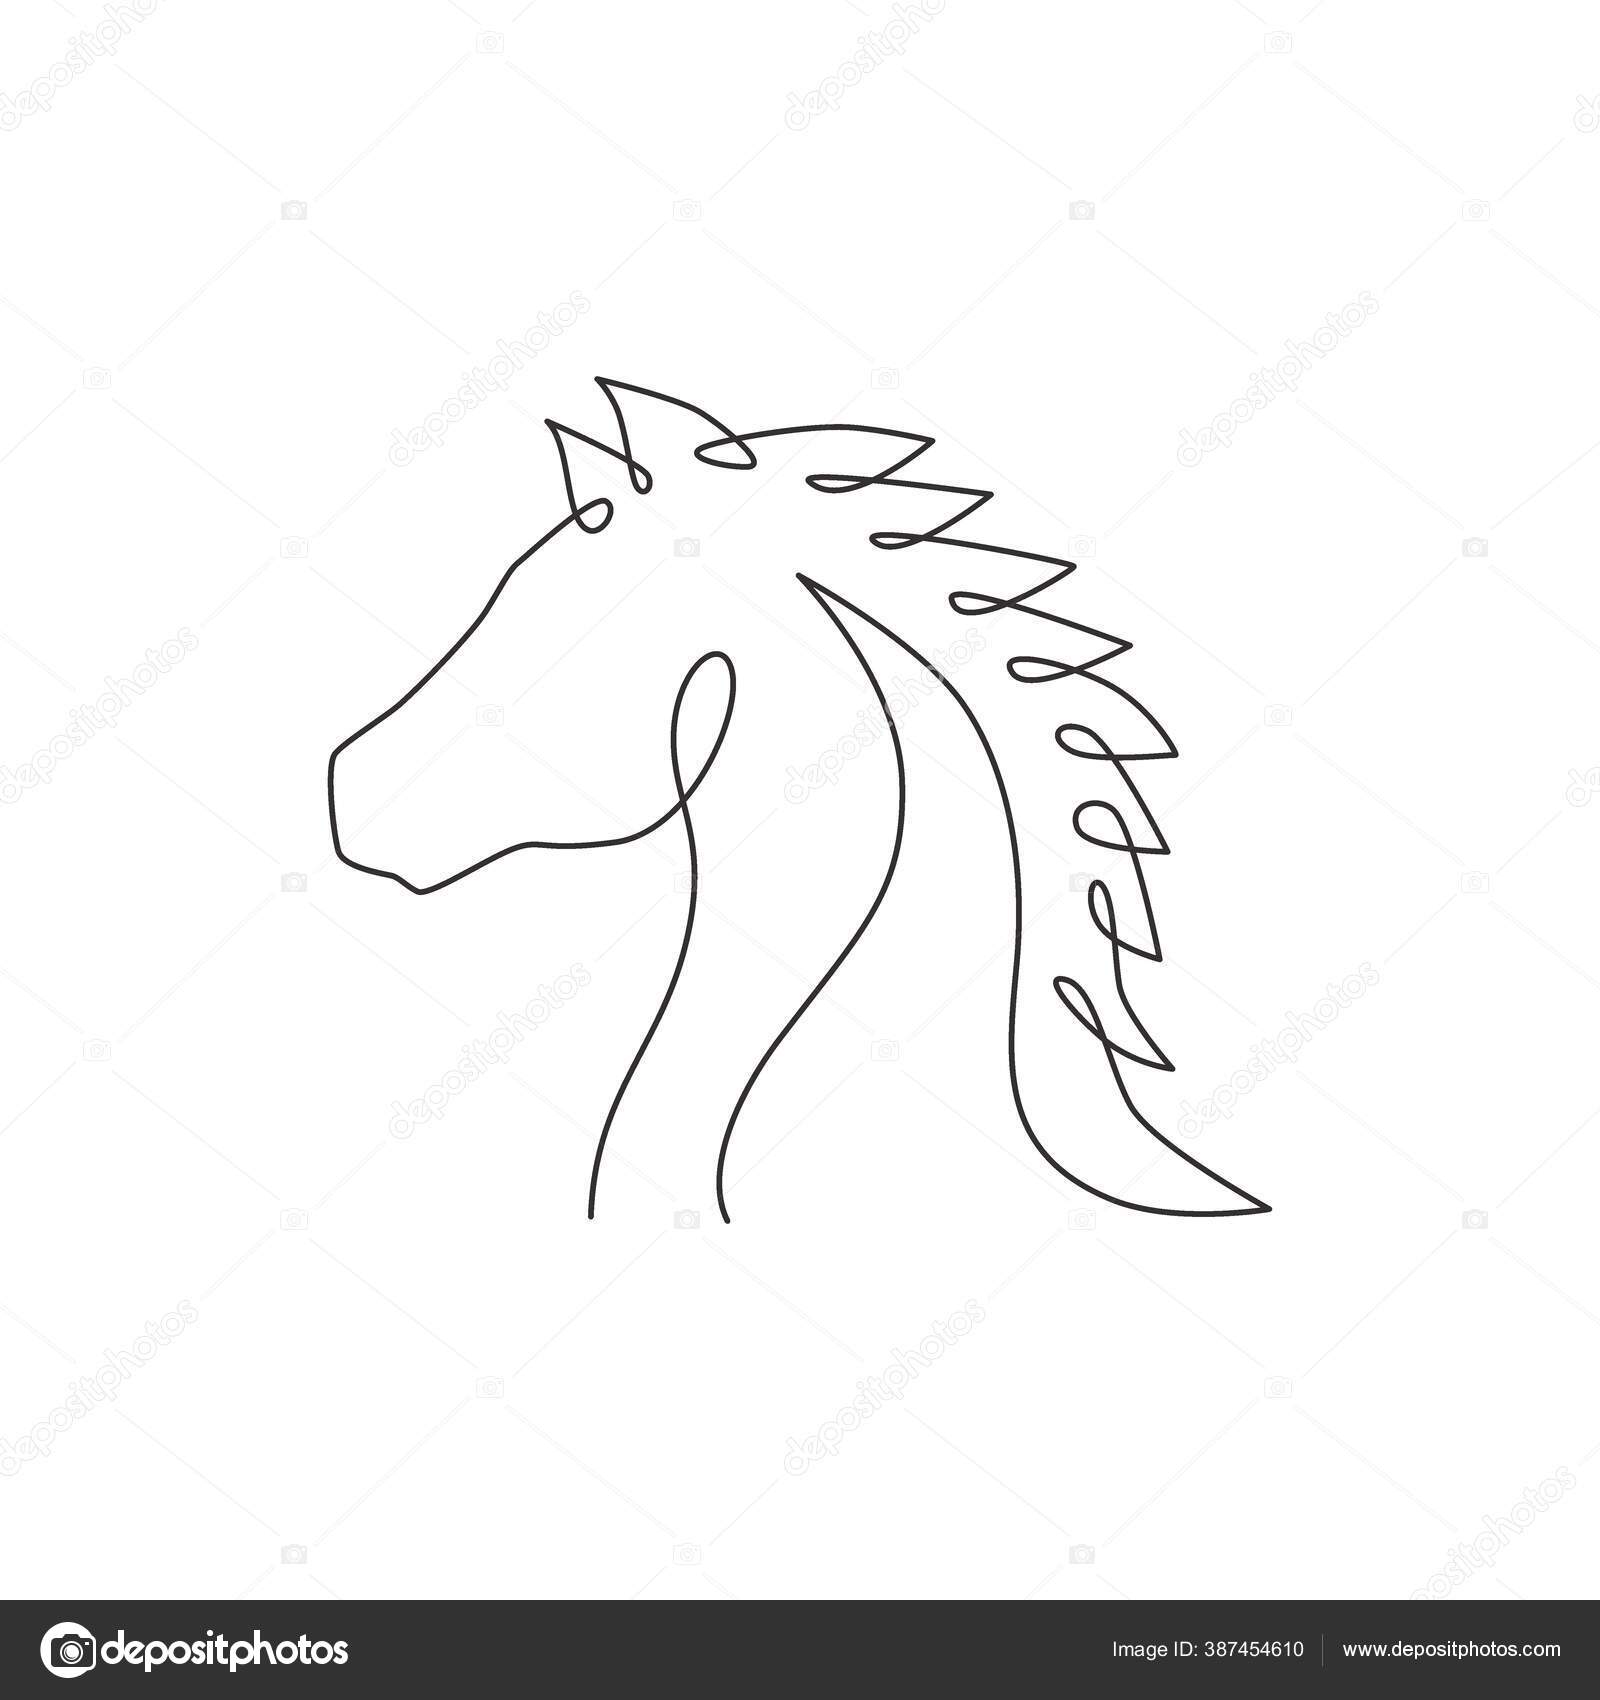 Ilustração vetorial de design de logotipo de cavalo pulando